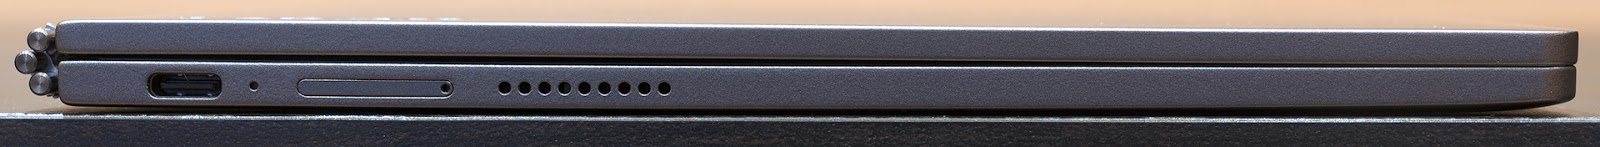 Lenovo YogaBook C930: устройство, которое заменяет сразу четыре гаджета - 7